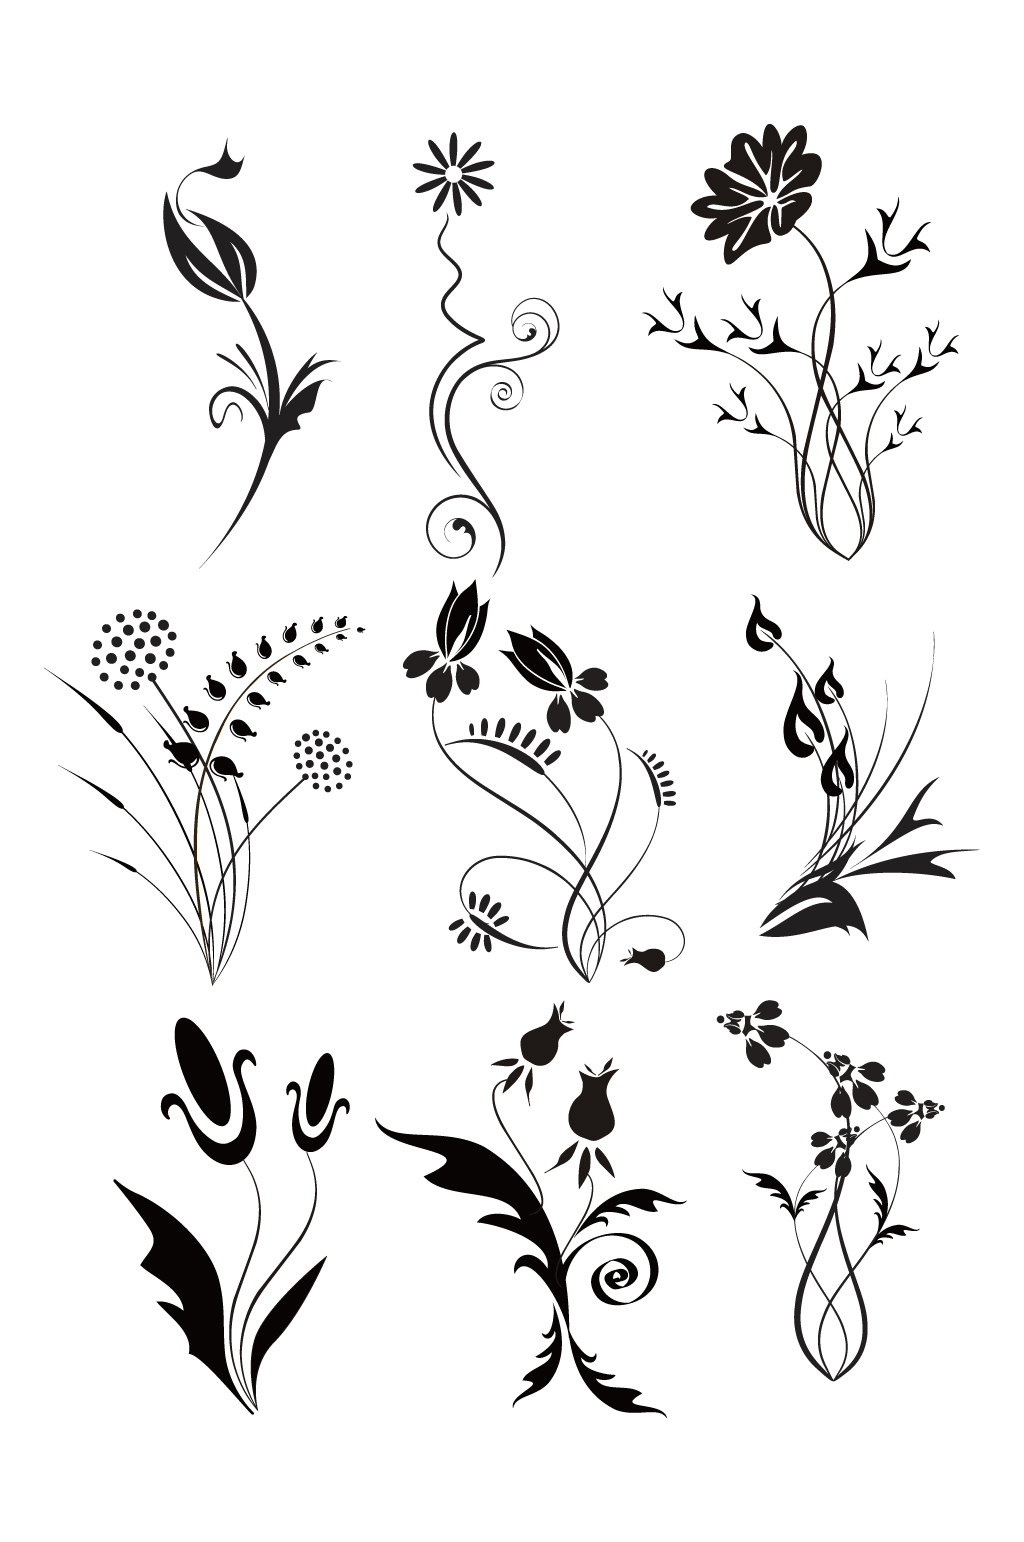 花卉与纹样黑白图片